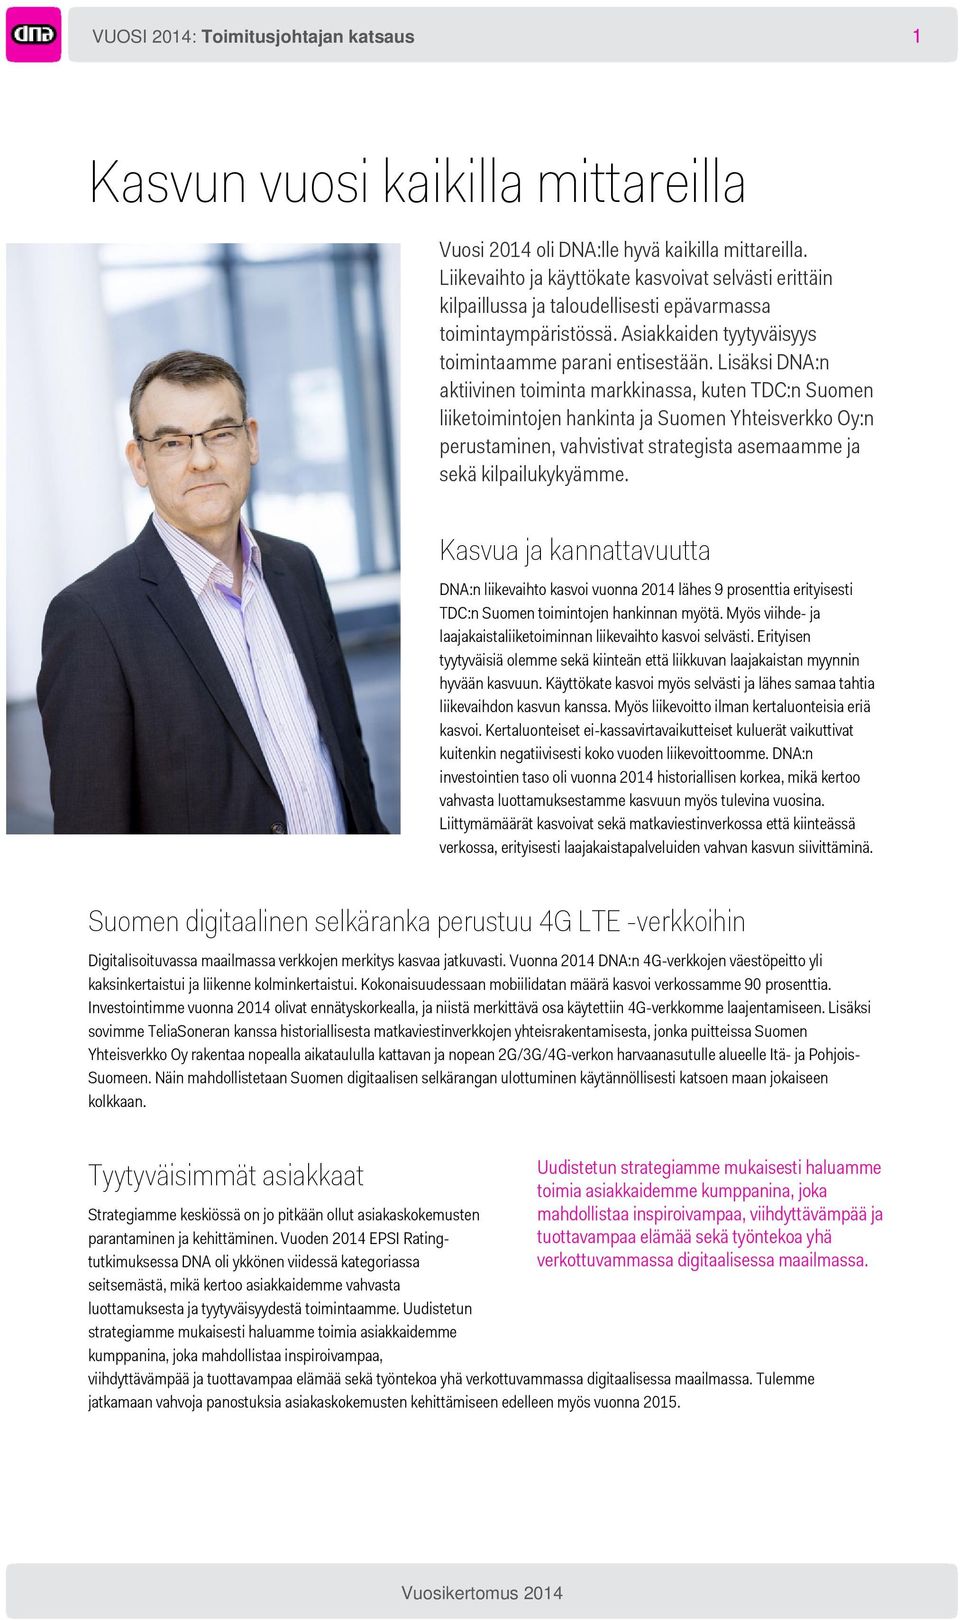 Lisäksi DNA:n aktiivinen toiminta markkinassa, kuten TDC:n Suomen liiketoimintojen hankinta ja Suomen Yhteisverkko Oy:n perustaminen, vahvistivat strategista asemaamme ja sekä kilpailukykyämme.